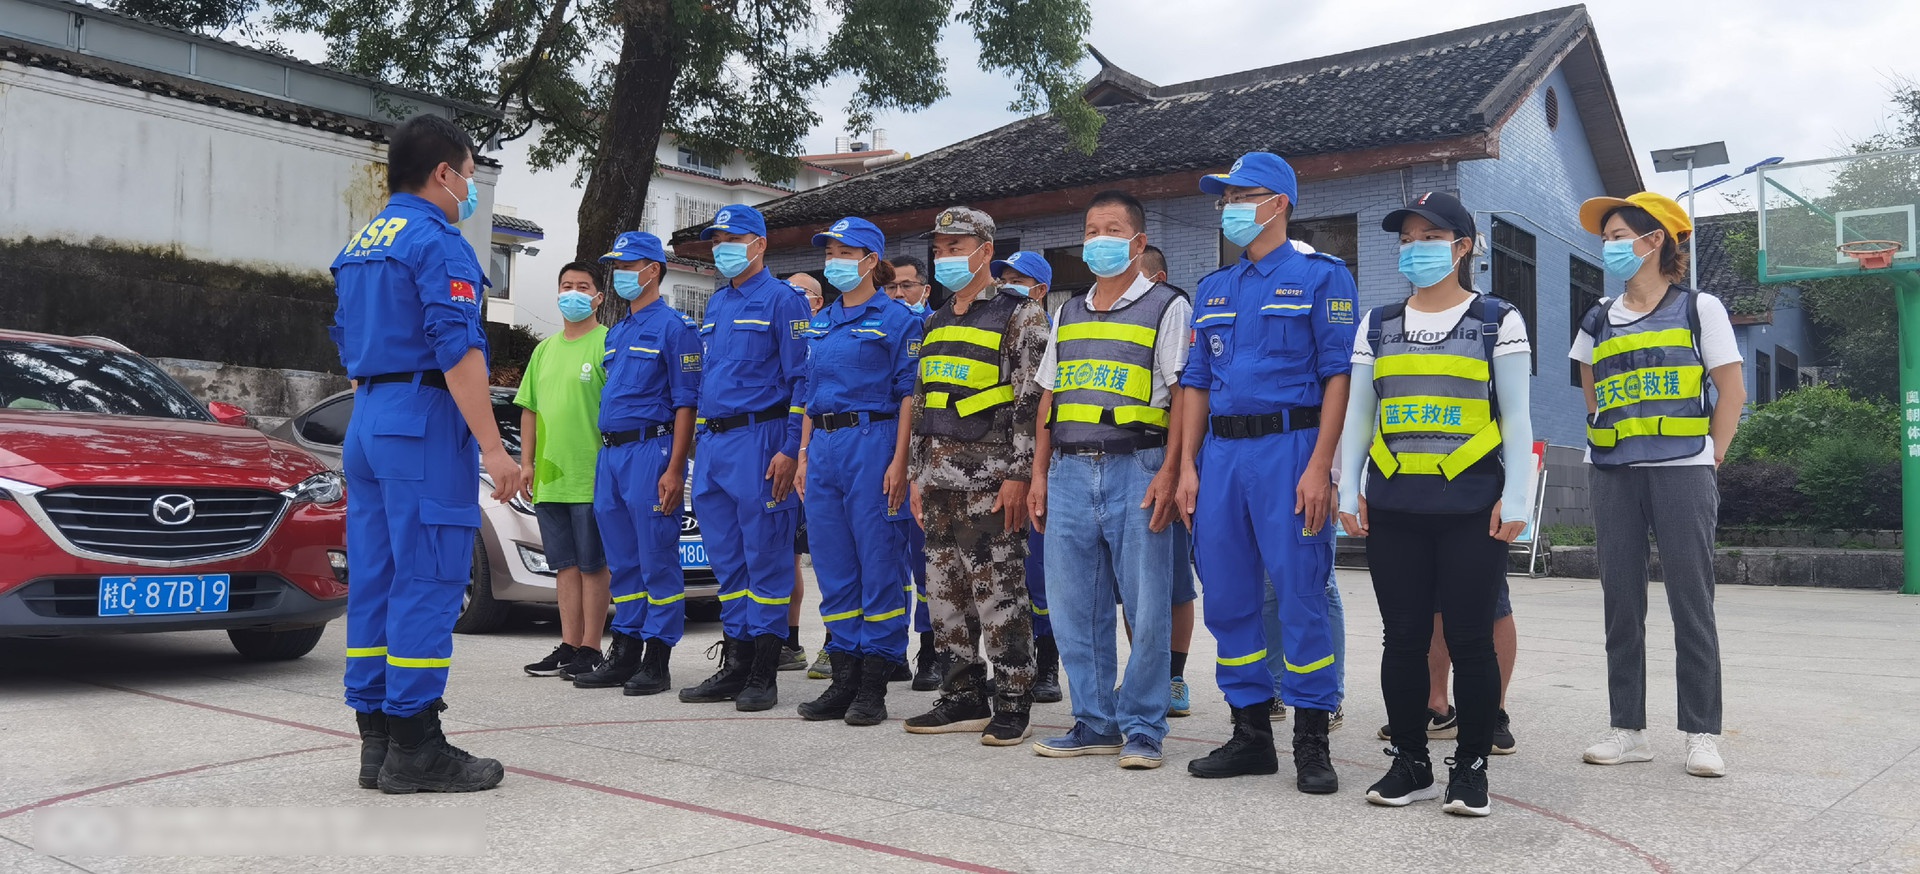 乐施会合作伙伴桂林市蓝天救援队